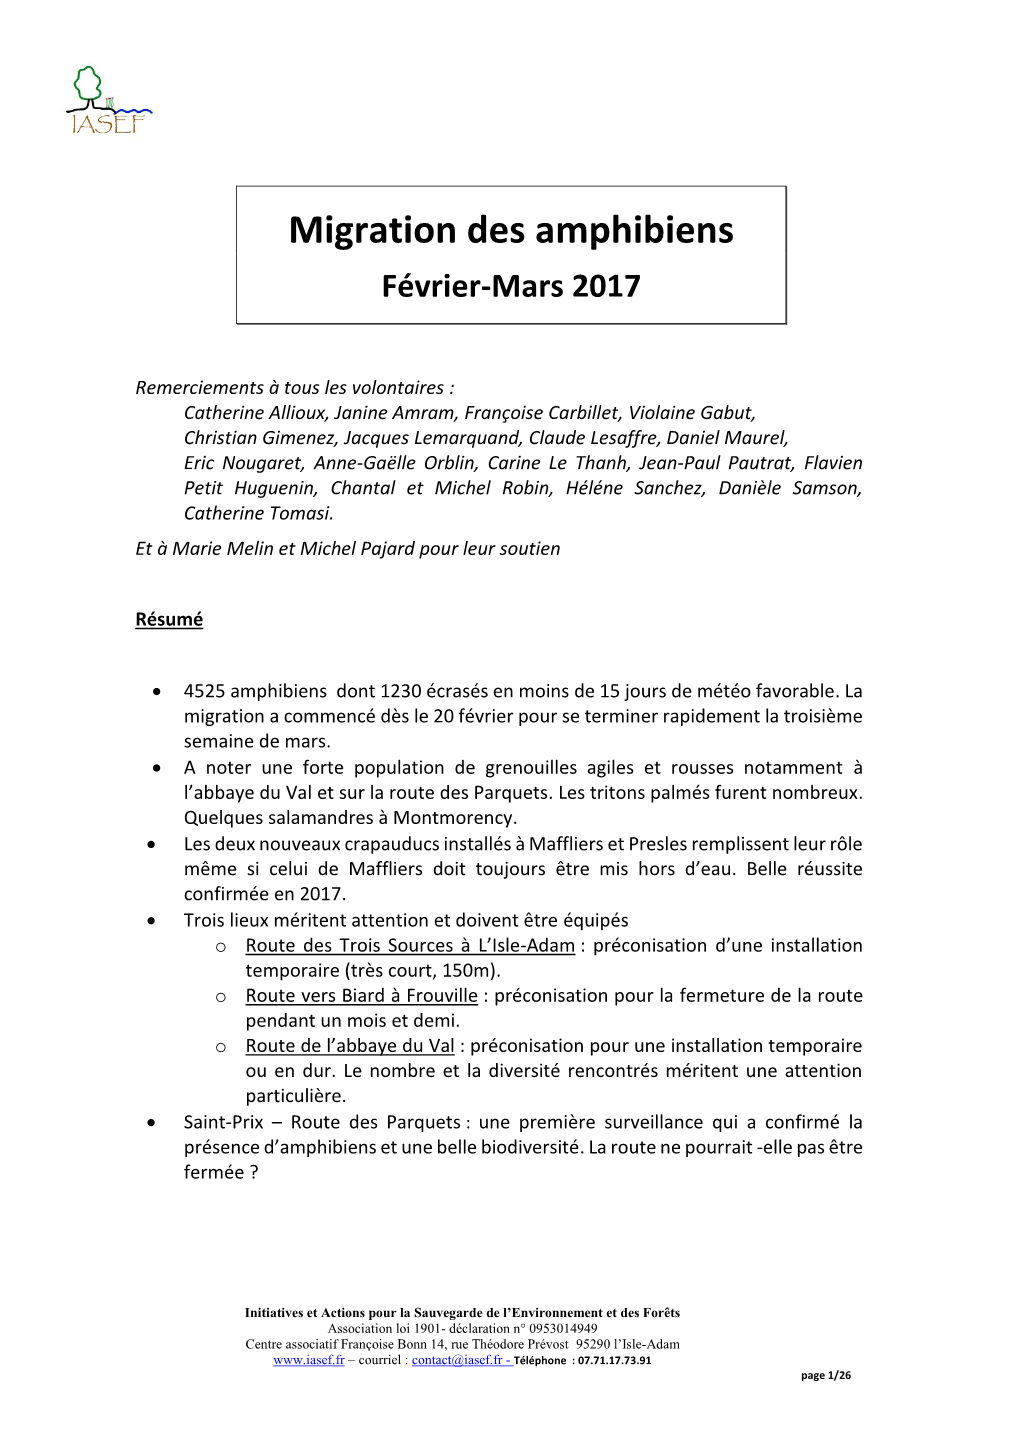 Migration Des Amphibiens Février-Mars 2017